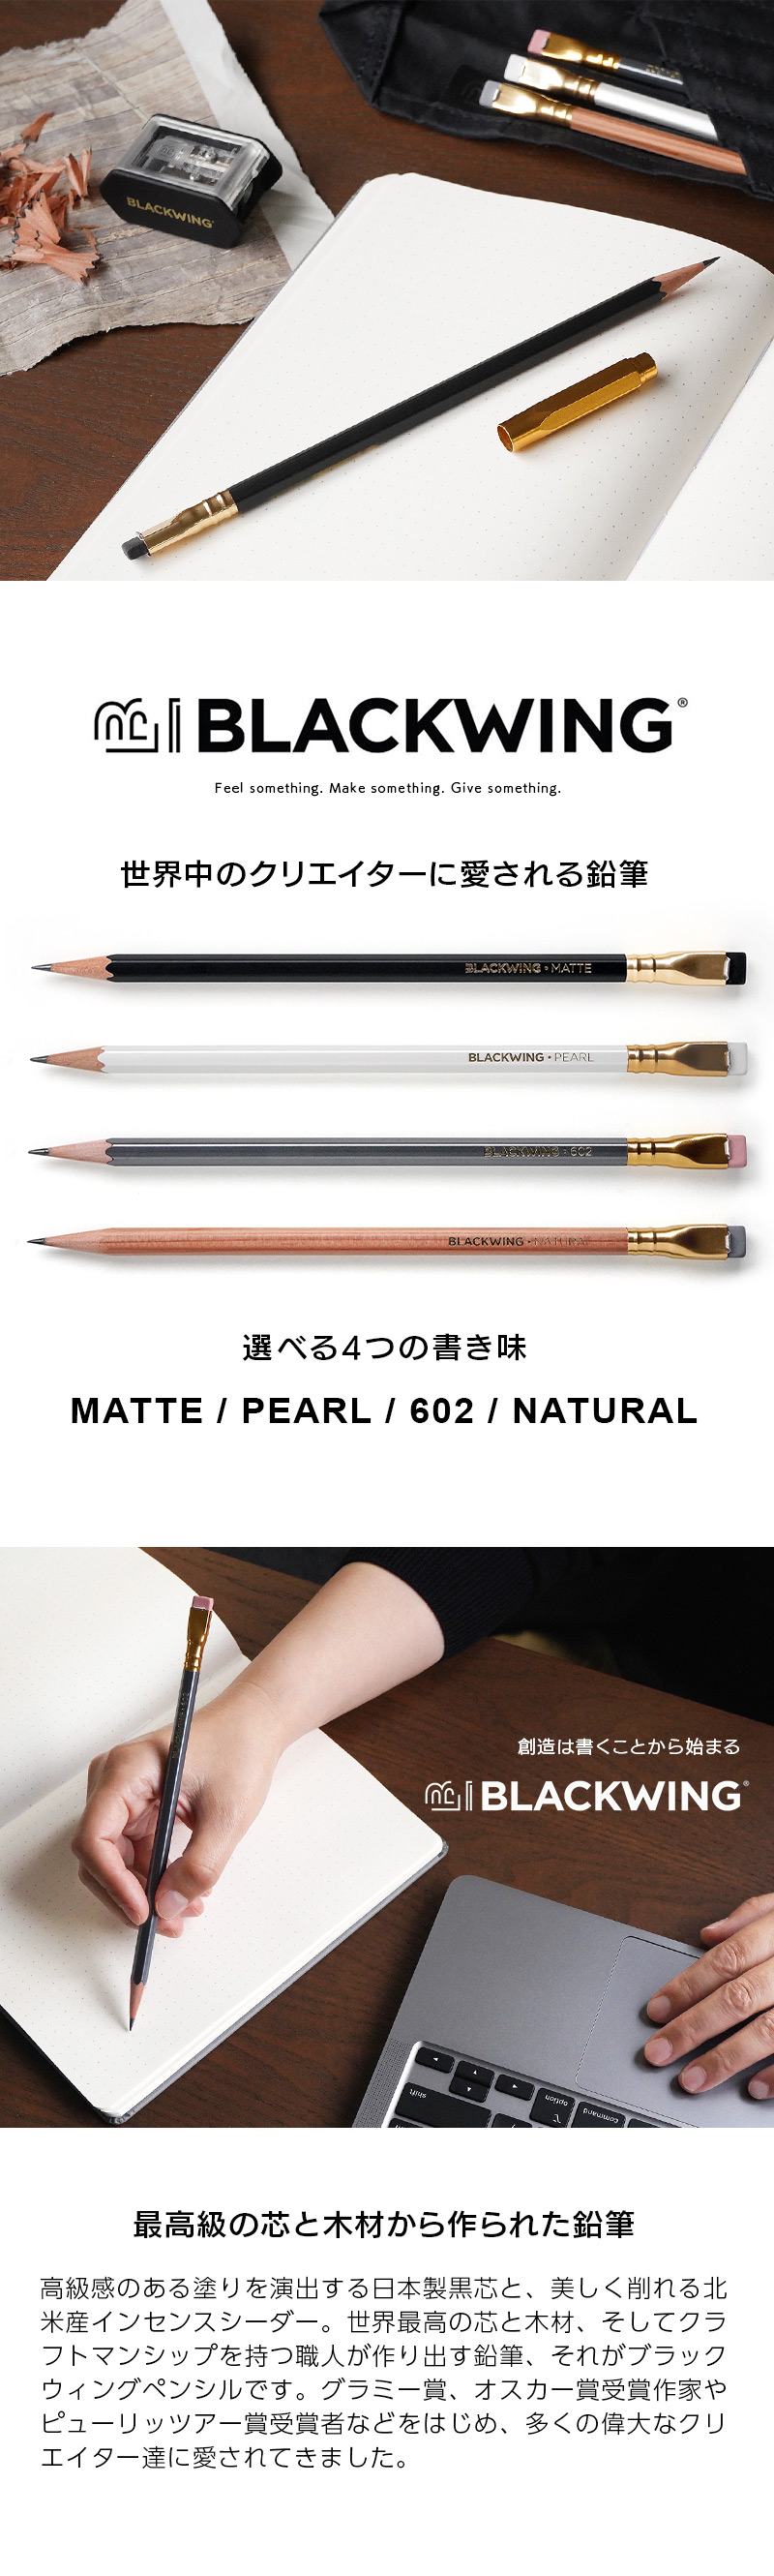 BLACKWING 世界中のクリエイターに愛される鉛筆 選べる4つの書き味 最高級の芯と木材から作られた鉛筆。